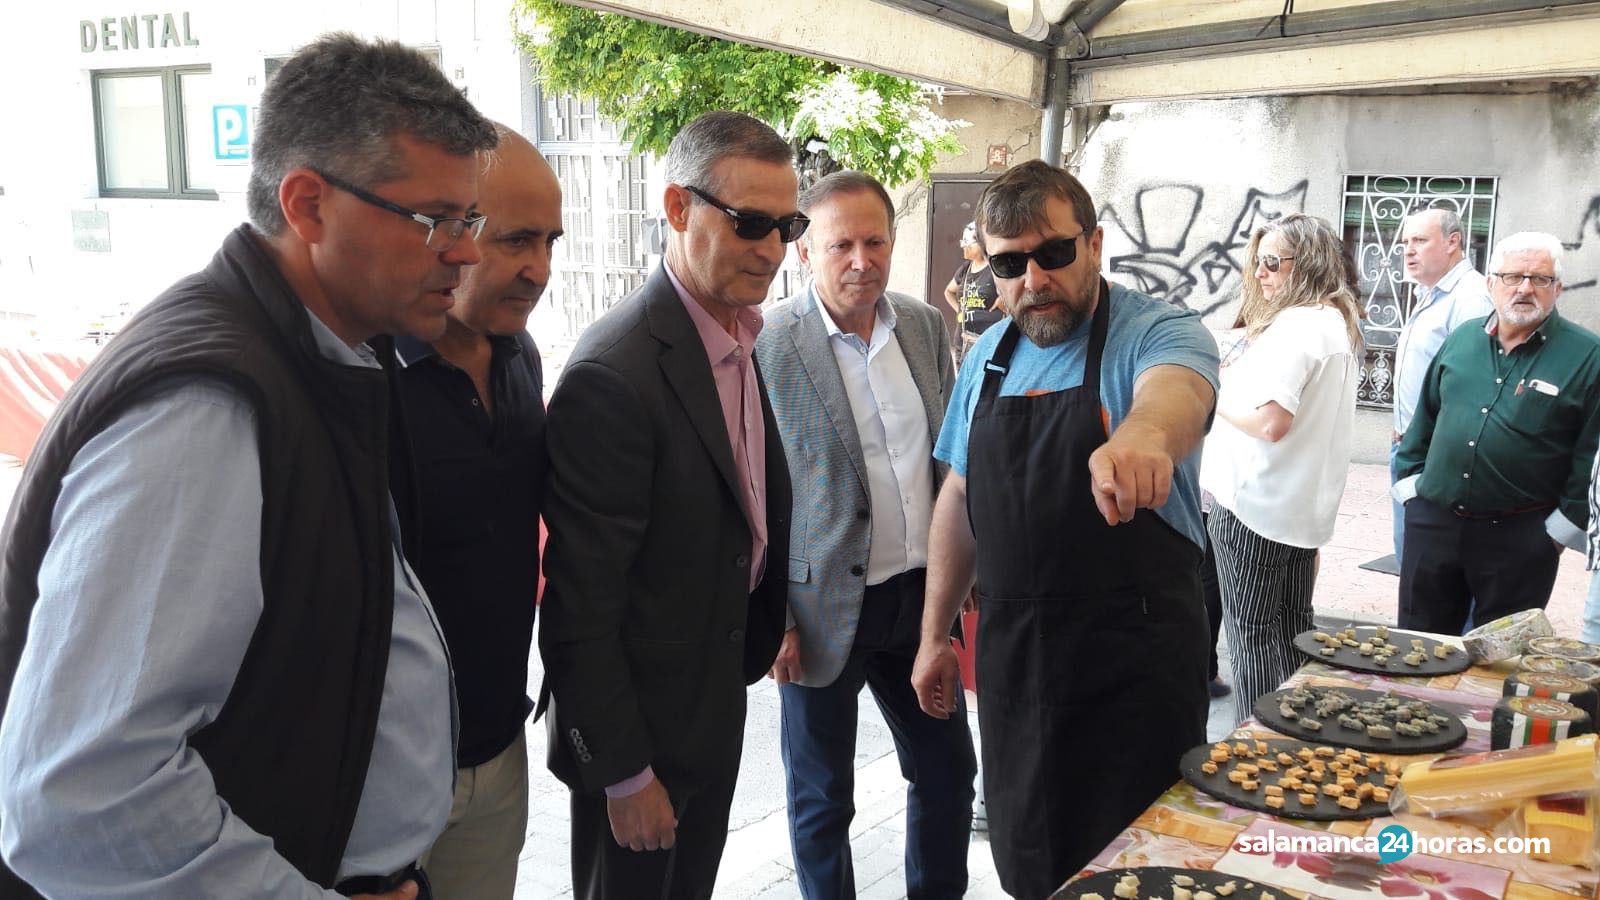  Feria de Artesanía y Alimentación en Alba de Tormes (37) 